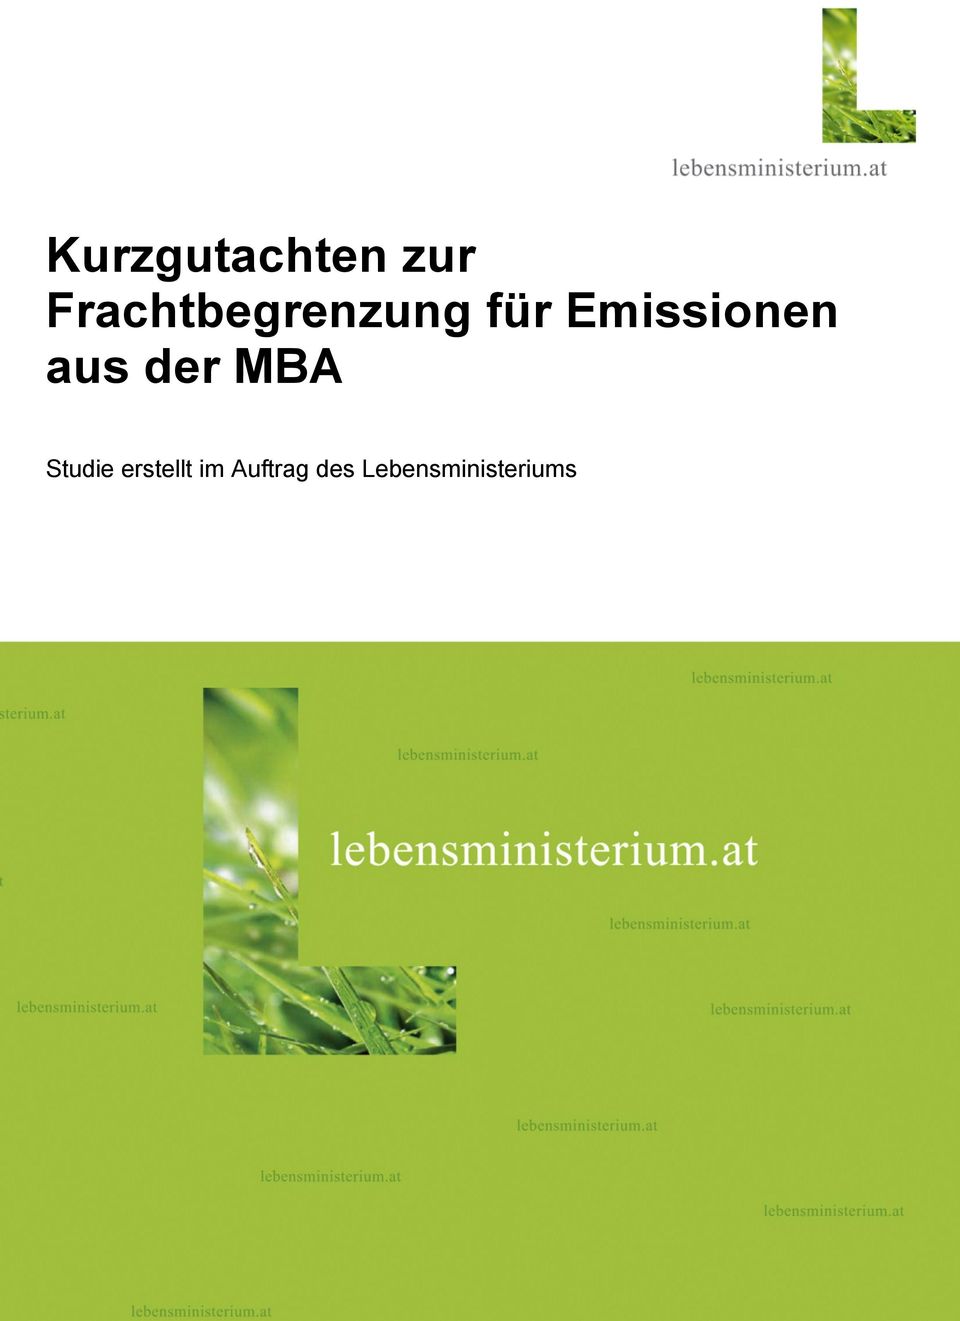 Emissionen aus der MBA